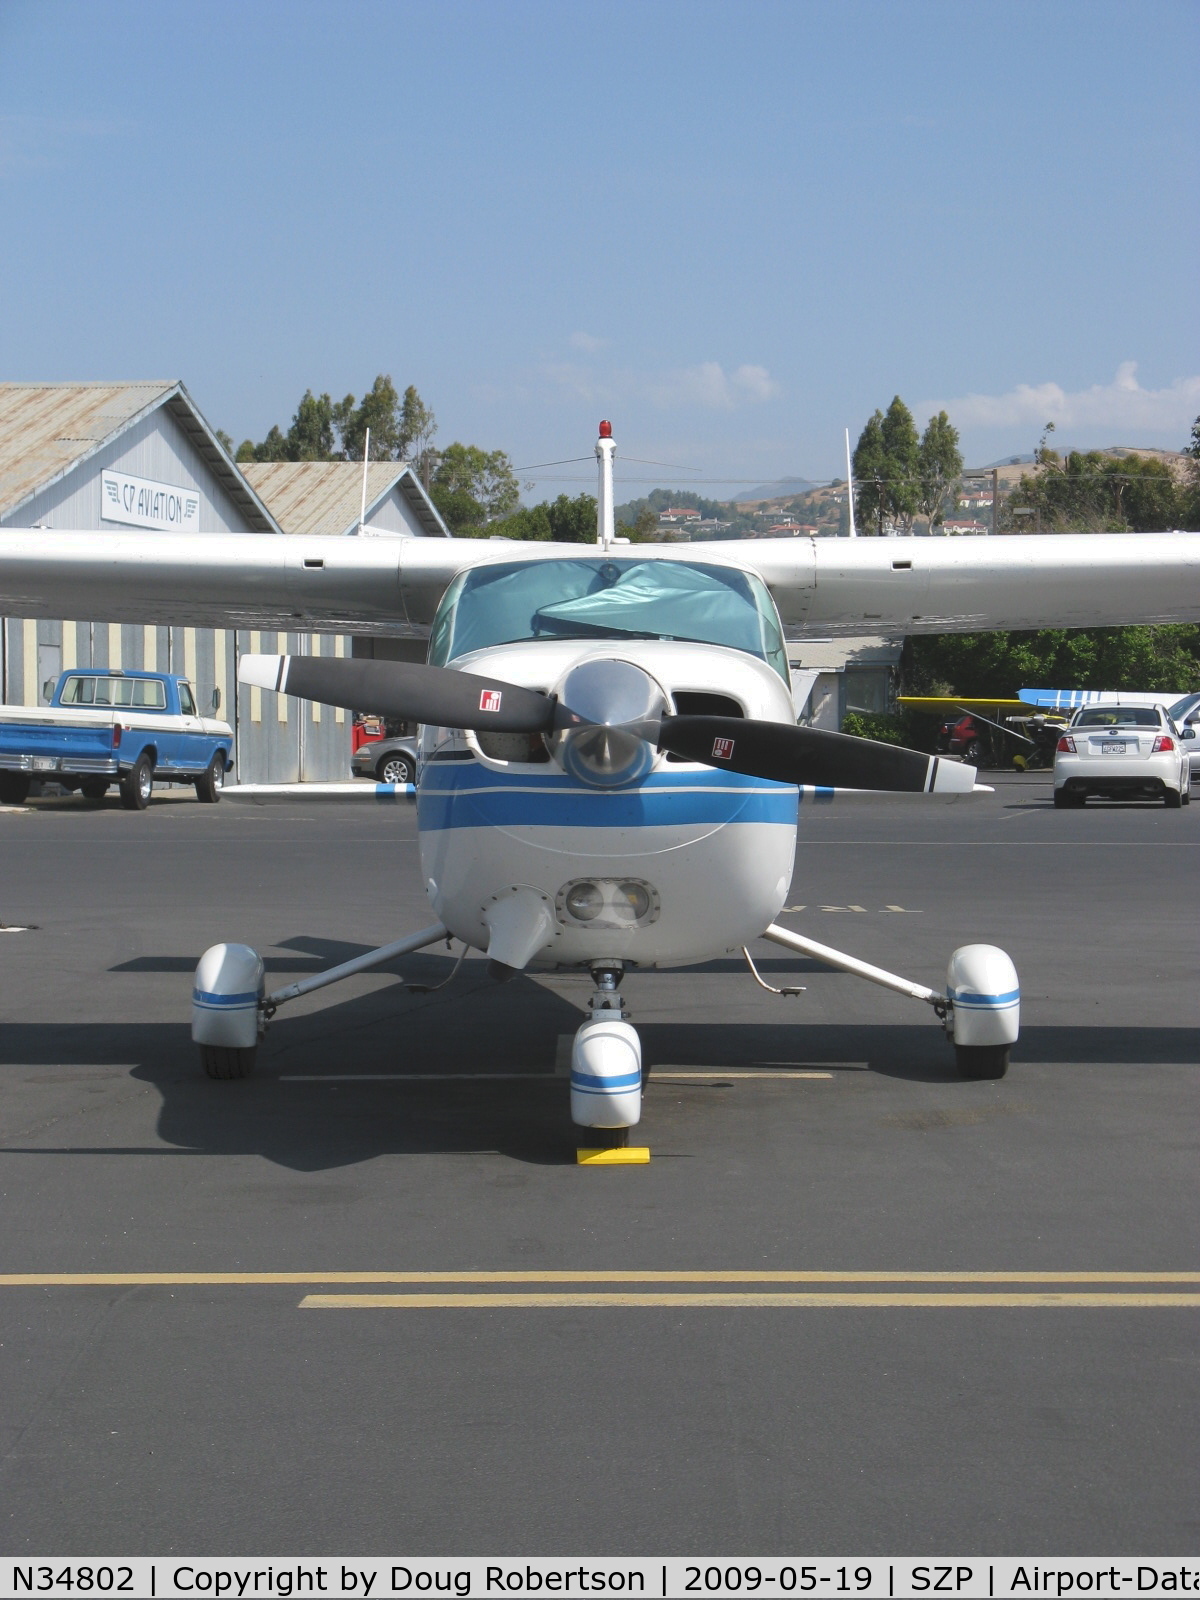 N34802, 1973 Cessna 177B Cardinal C/N 17702011, 1973 Cessna 177B CARDINAL, Lycoming O&VO-360 180 Hp, prop